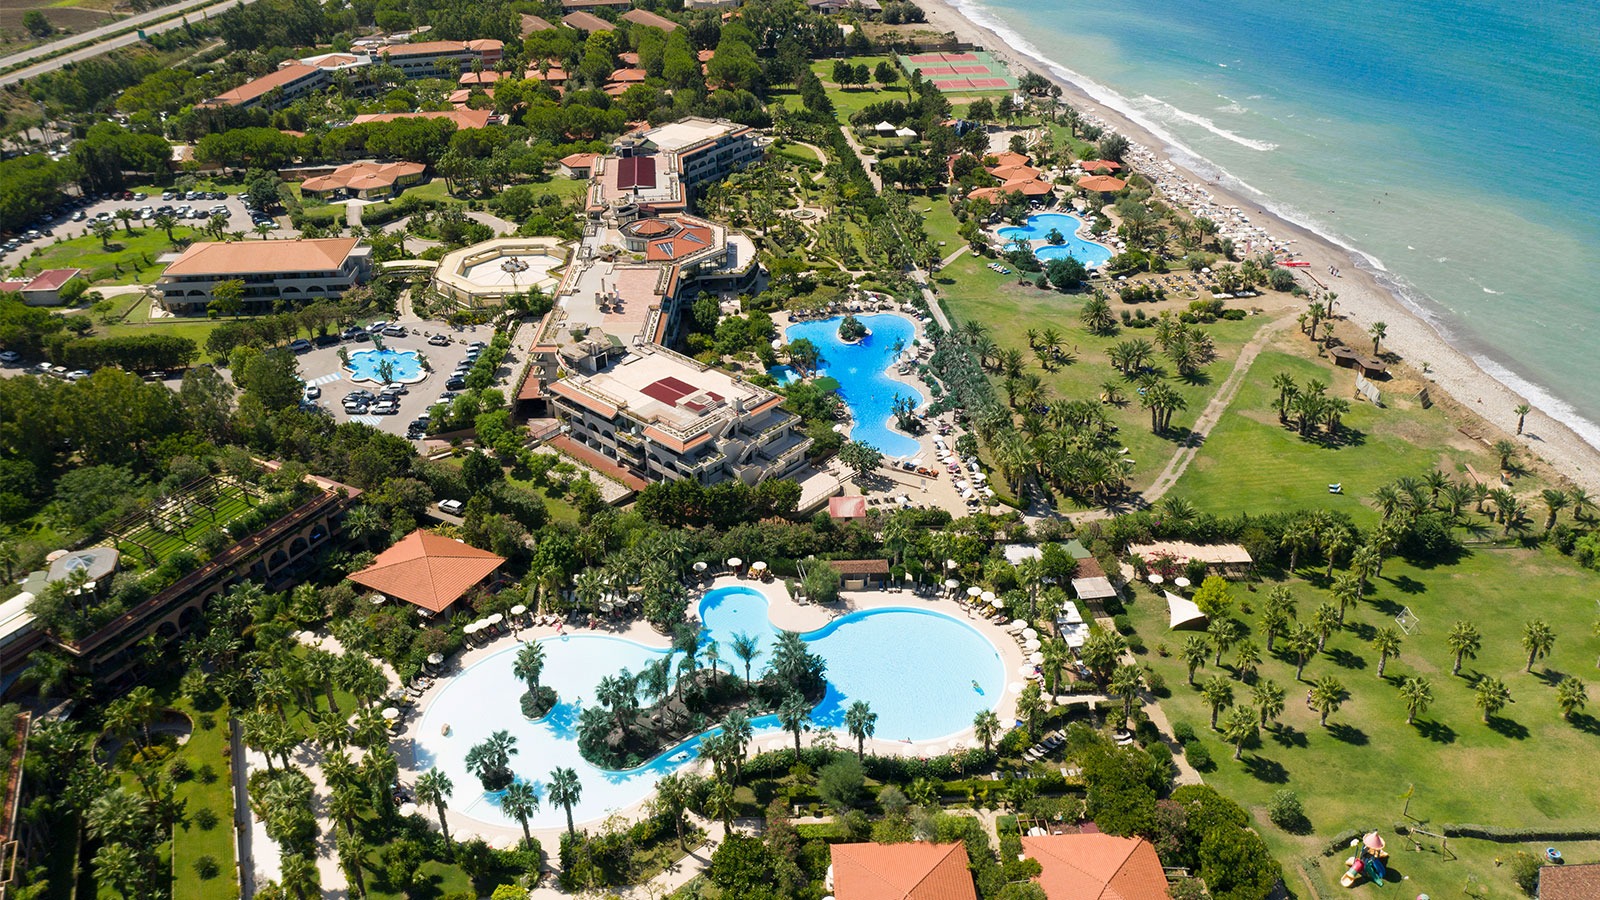 Grand Palladium Sicilia Resort & Spa Aerial View